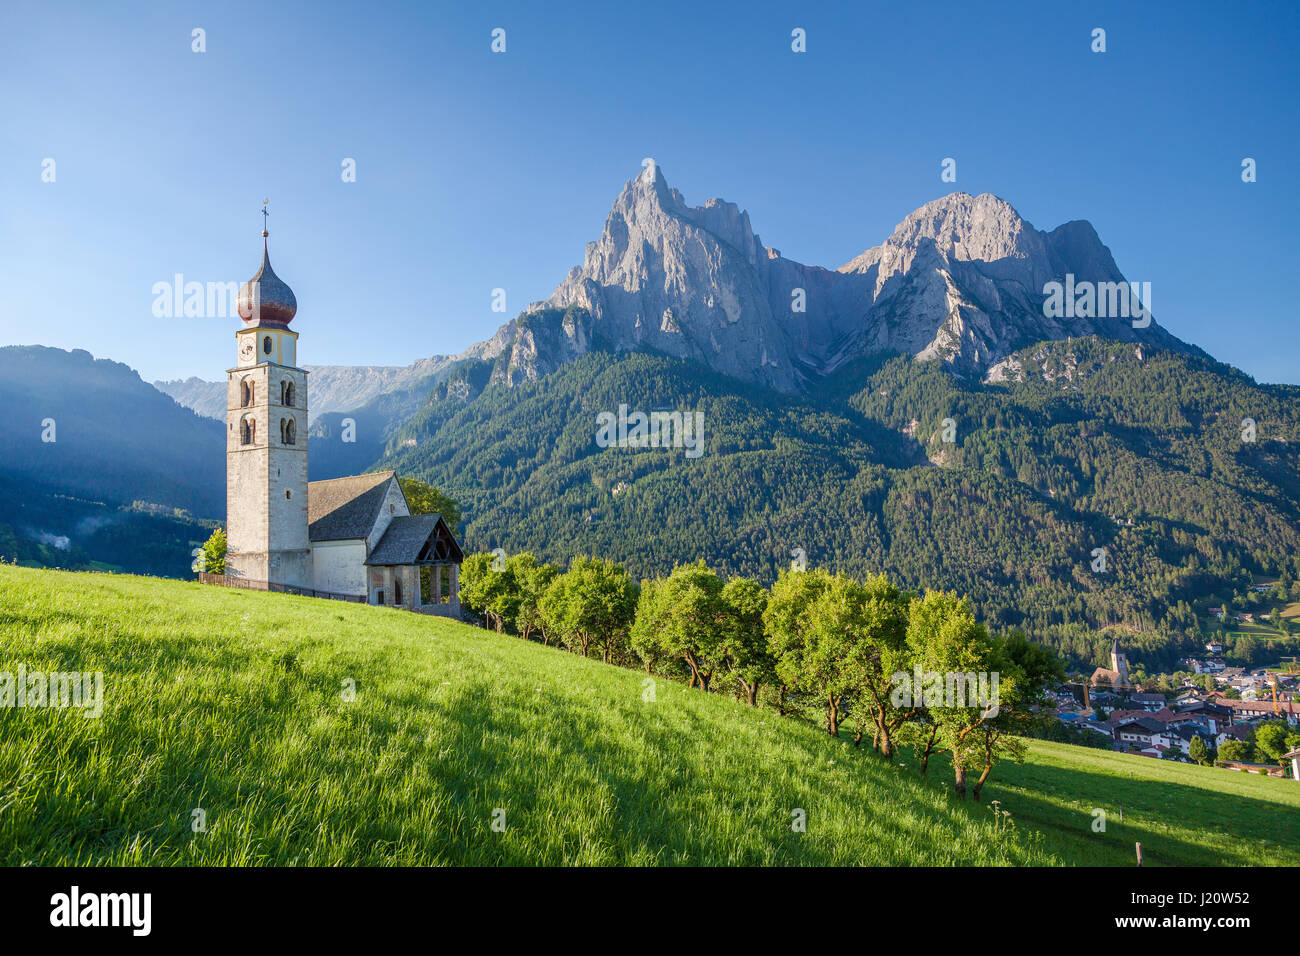 Vista panoramica di idilliaco paesaggio di montagna delle Dolomiti con la chiesetta di San Valentino e il famoso monte Sciliar in bella la luce del mattino al sorgere del sole Foto Stock